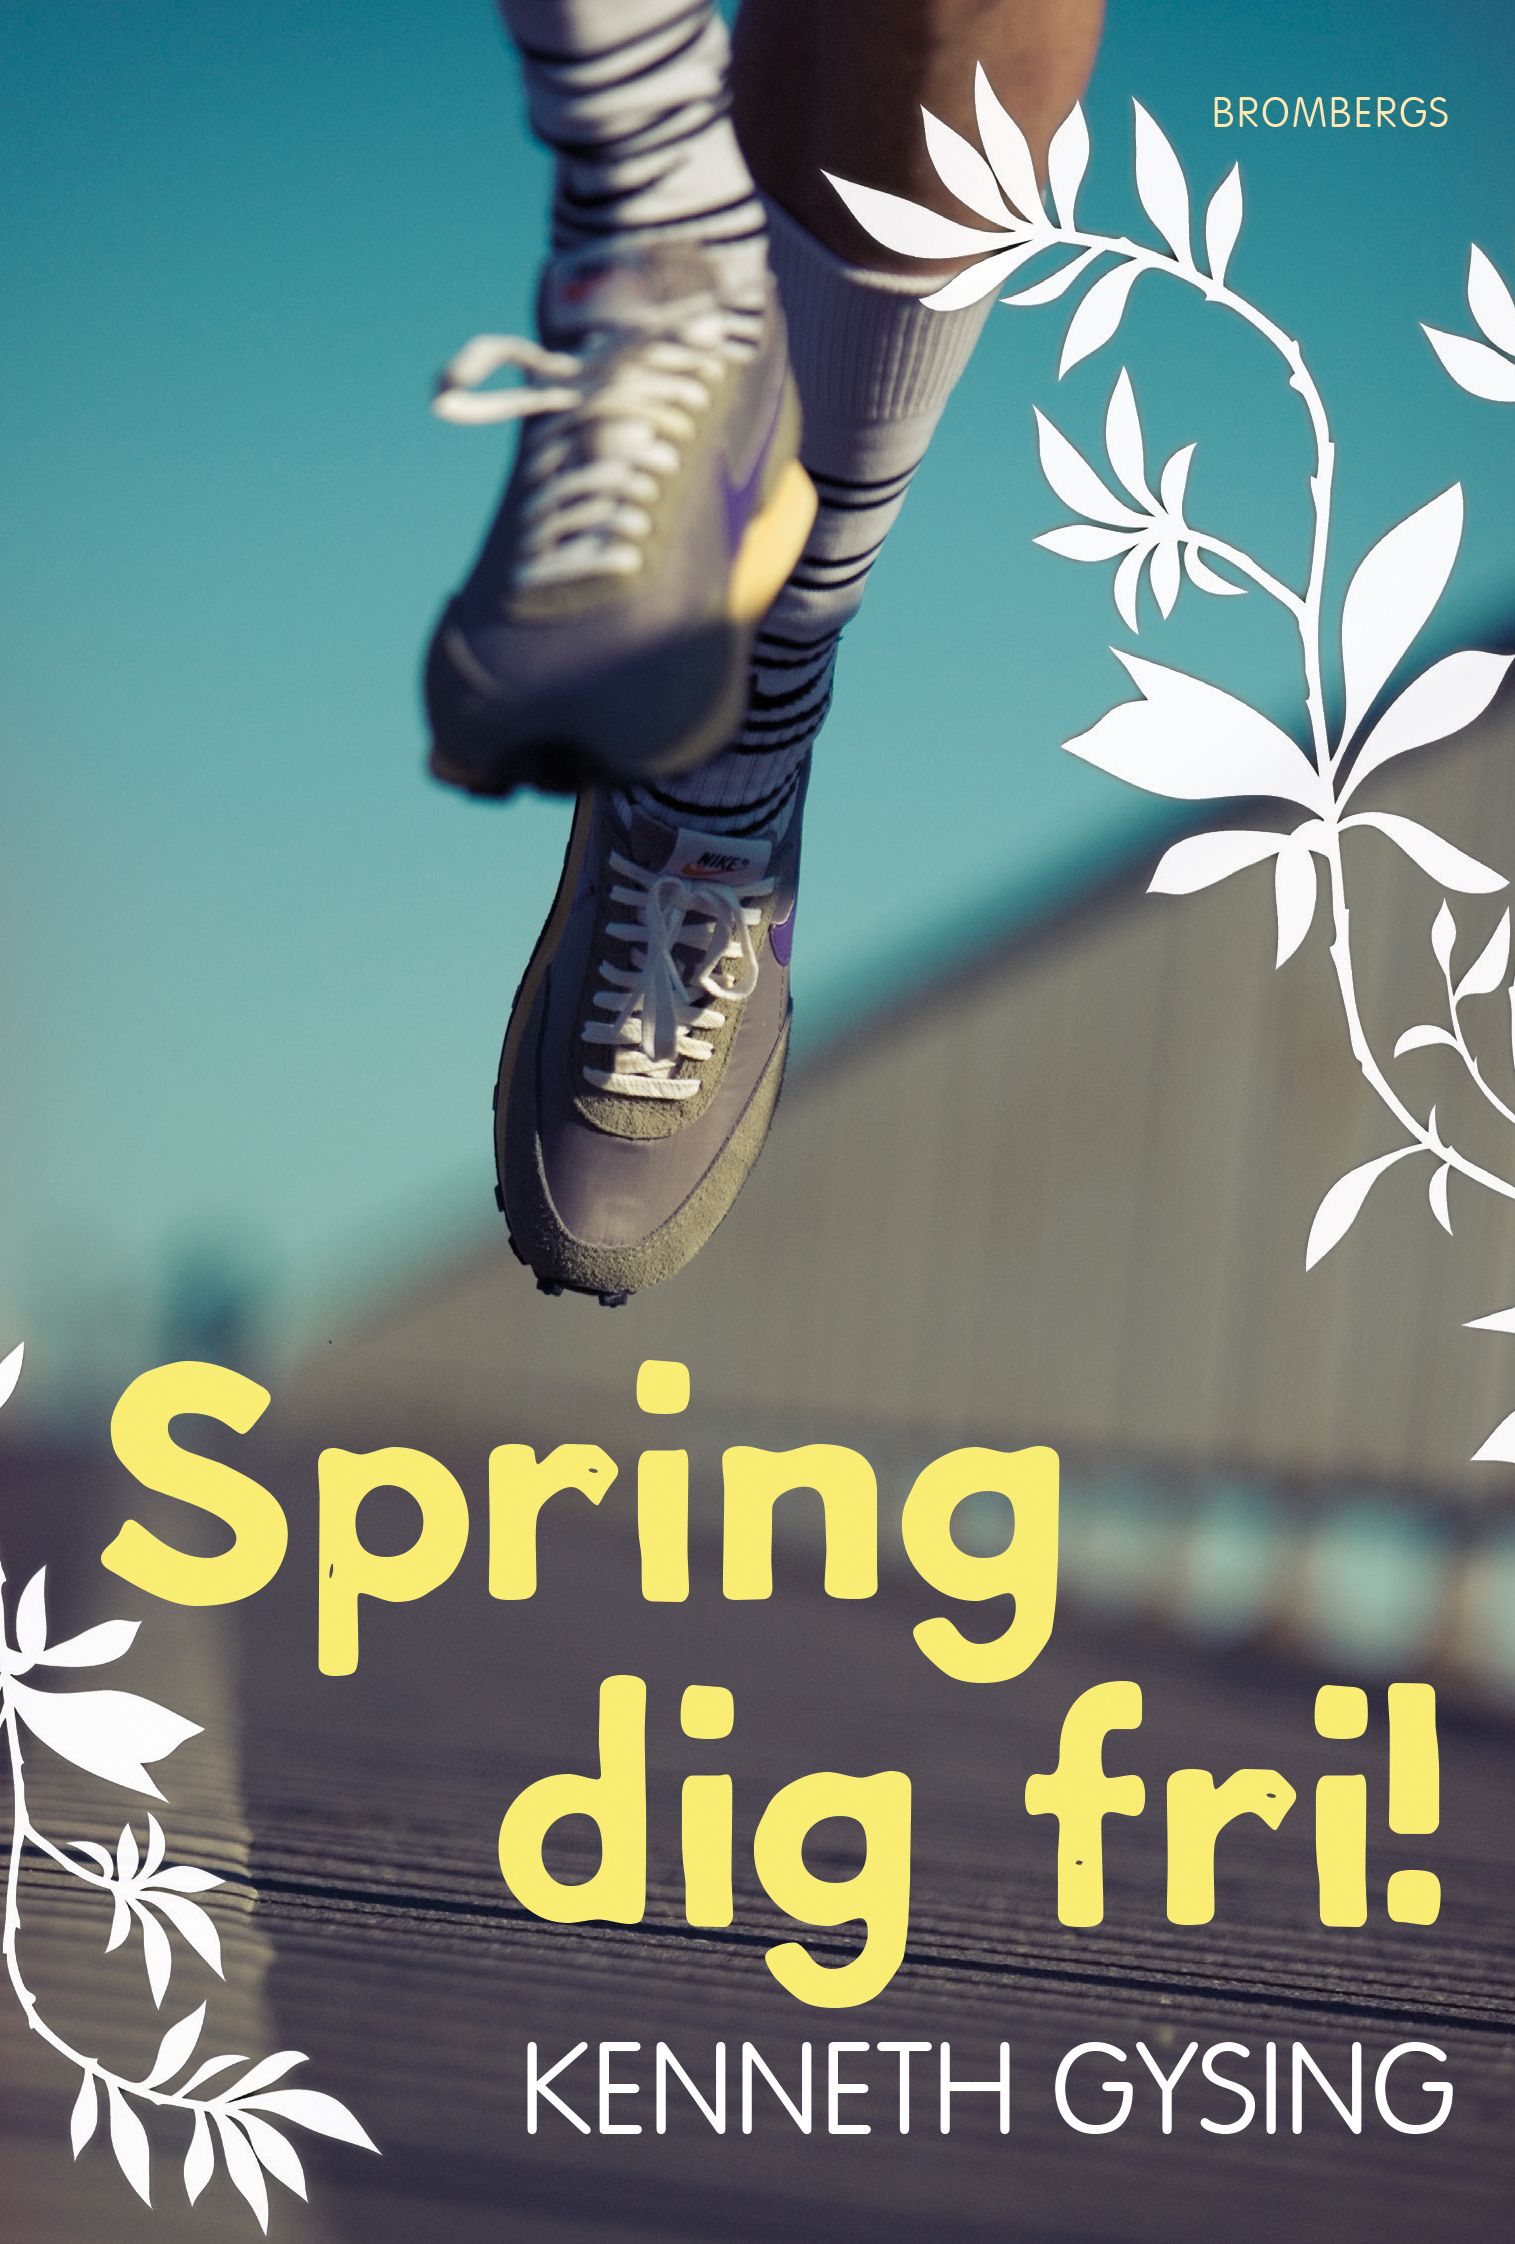 Spring dig fri, eBook by Kenneth Gysing